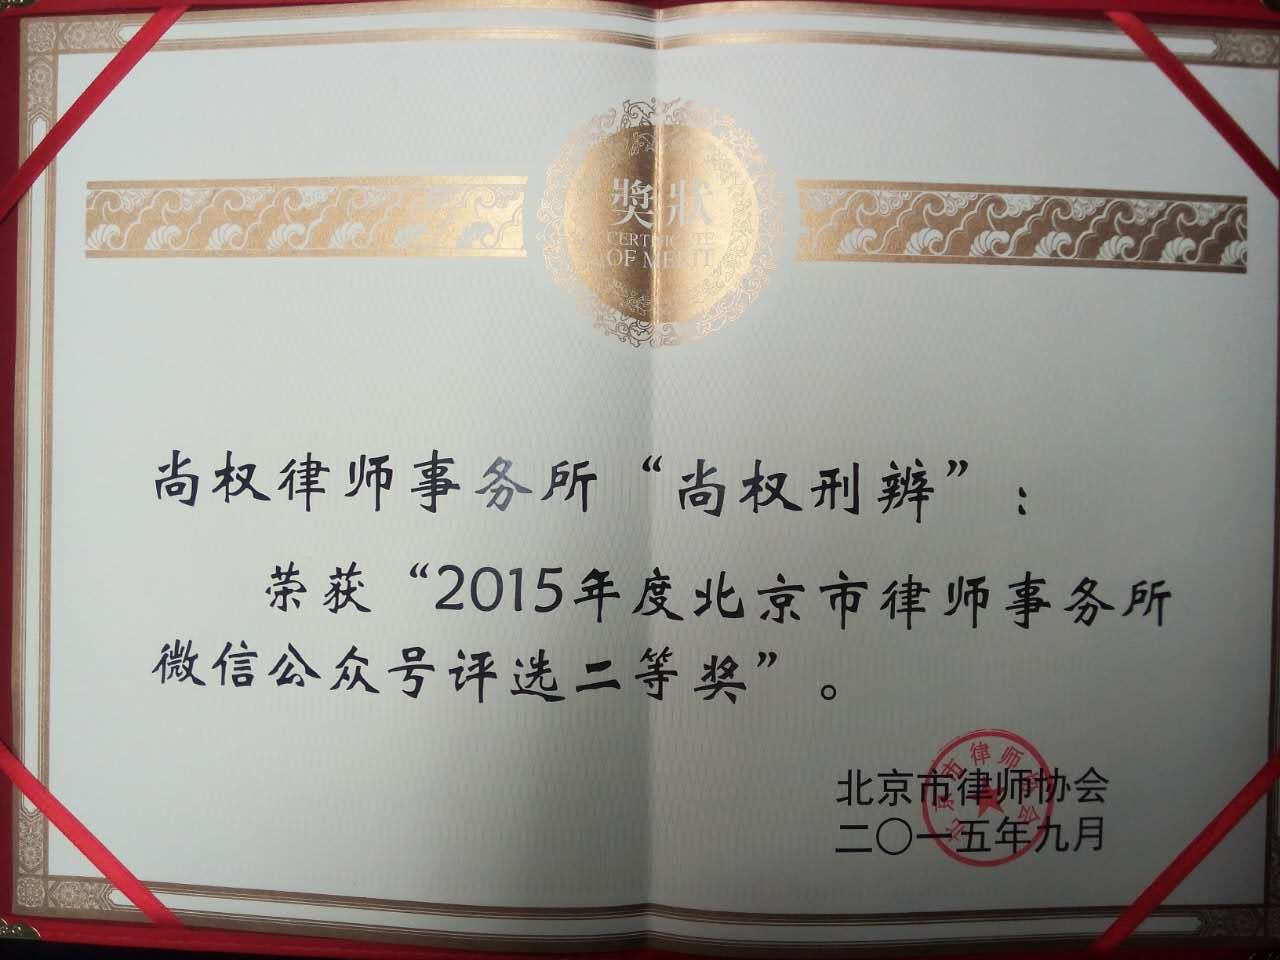 尚权律师事务所微信公众号荣获“2015年度北京市律师事务所二等奖”